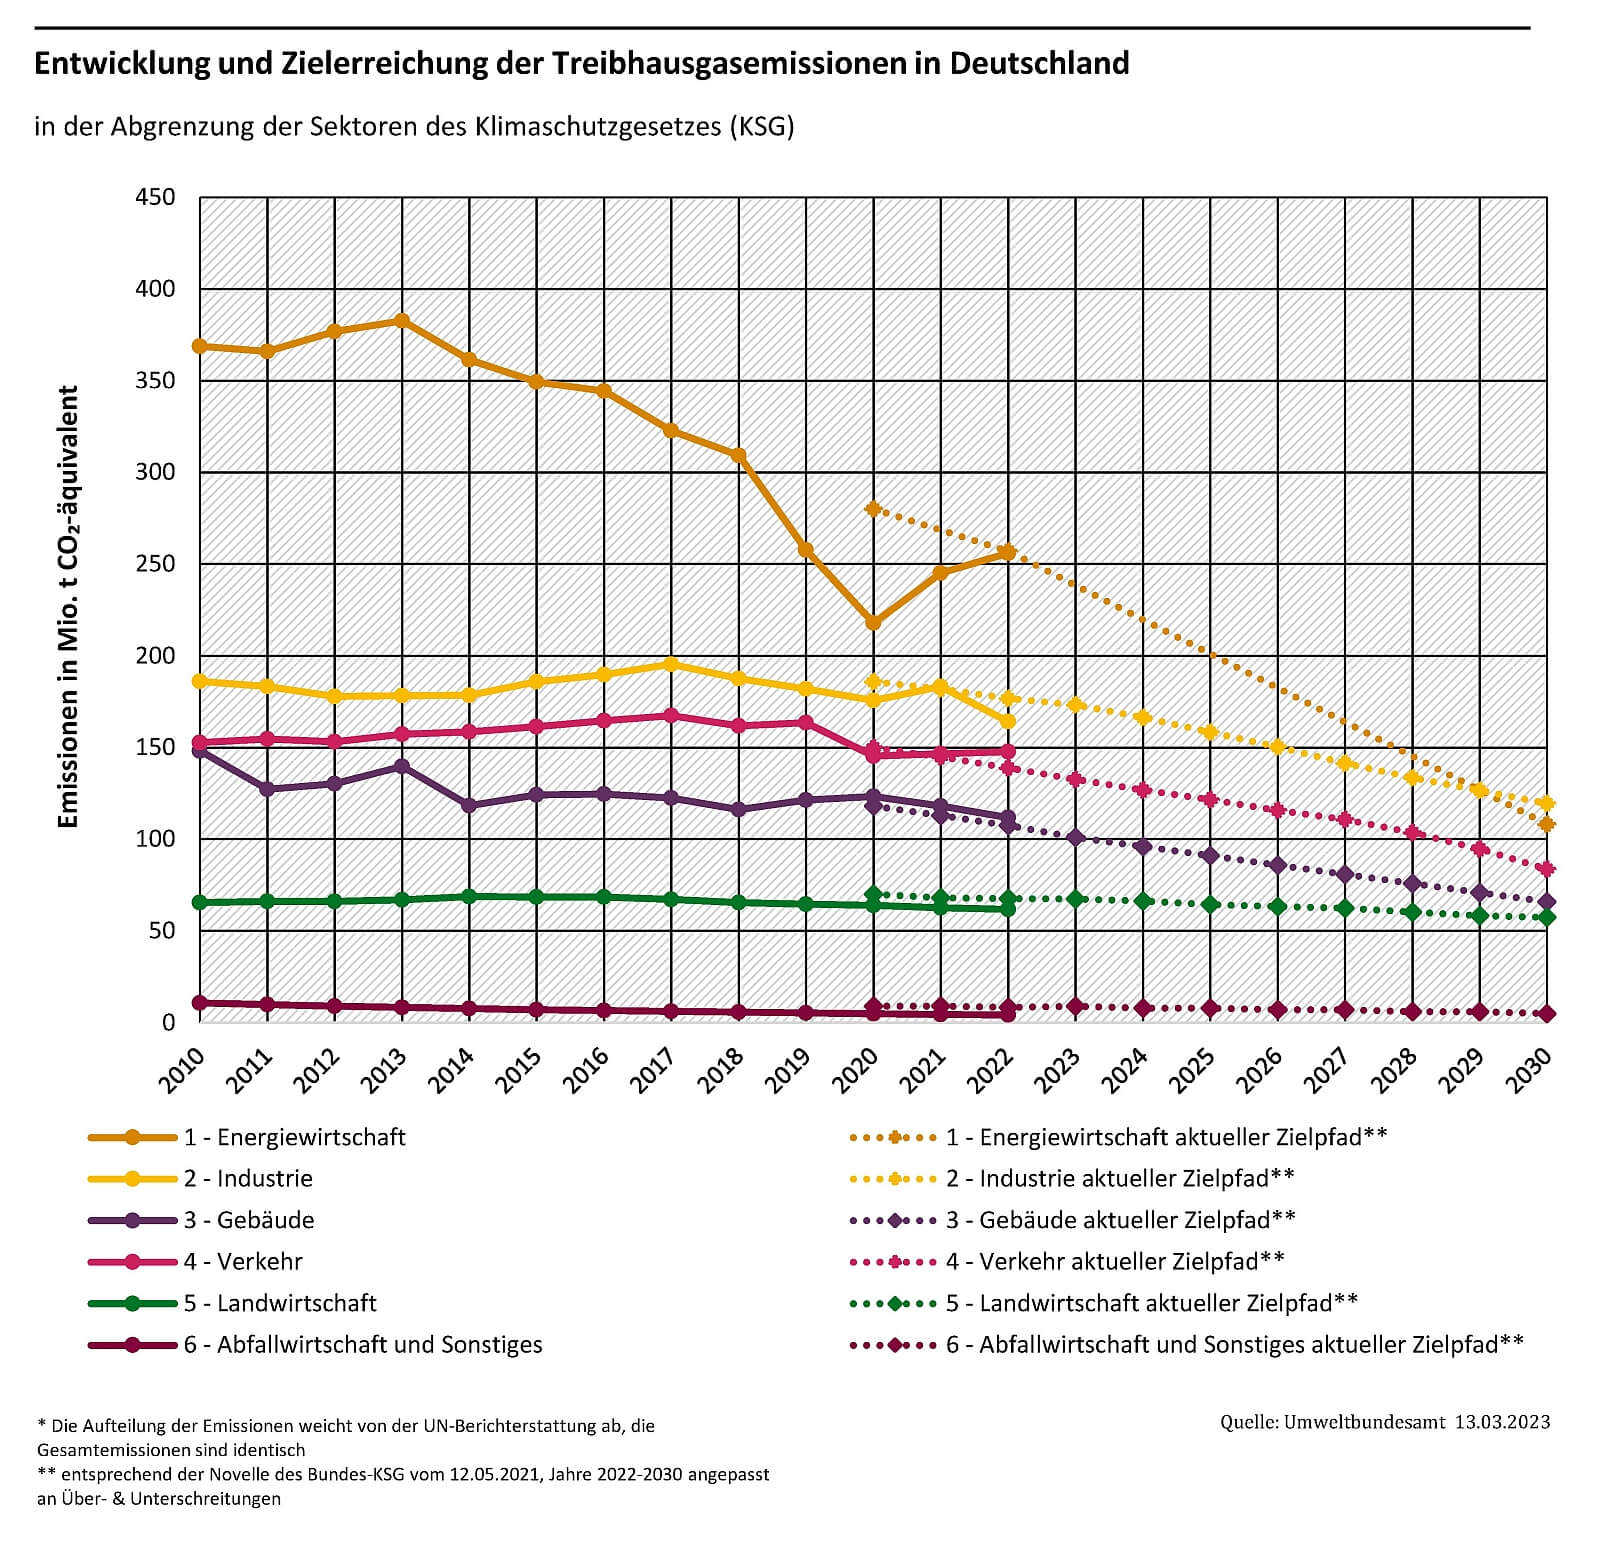 Entwicklung und Zielerreichung der Treibhausgasemissionen in Deutschland 2010-2022